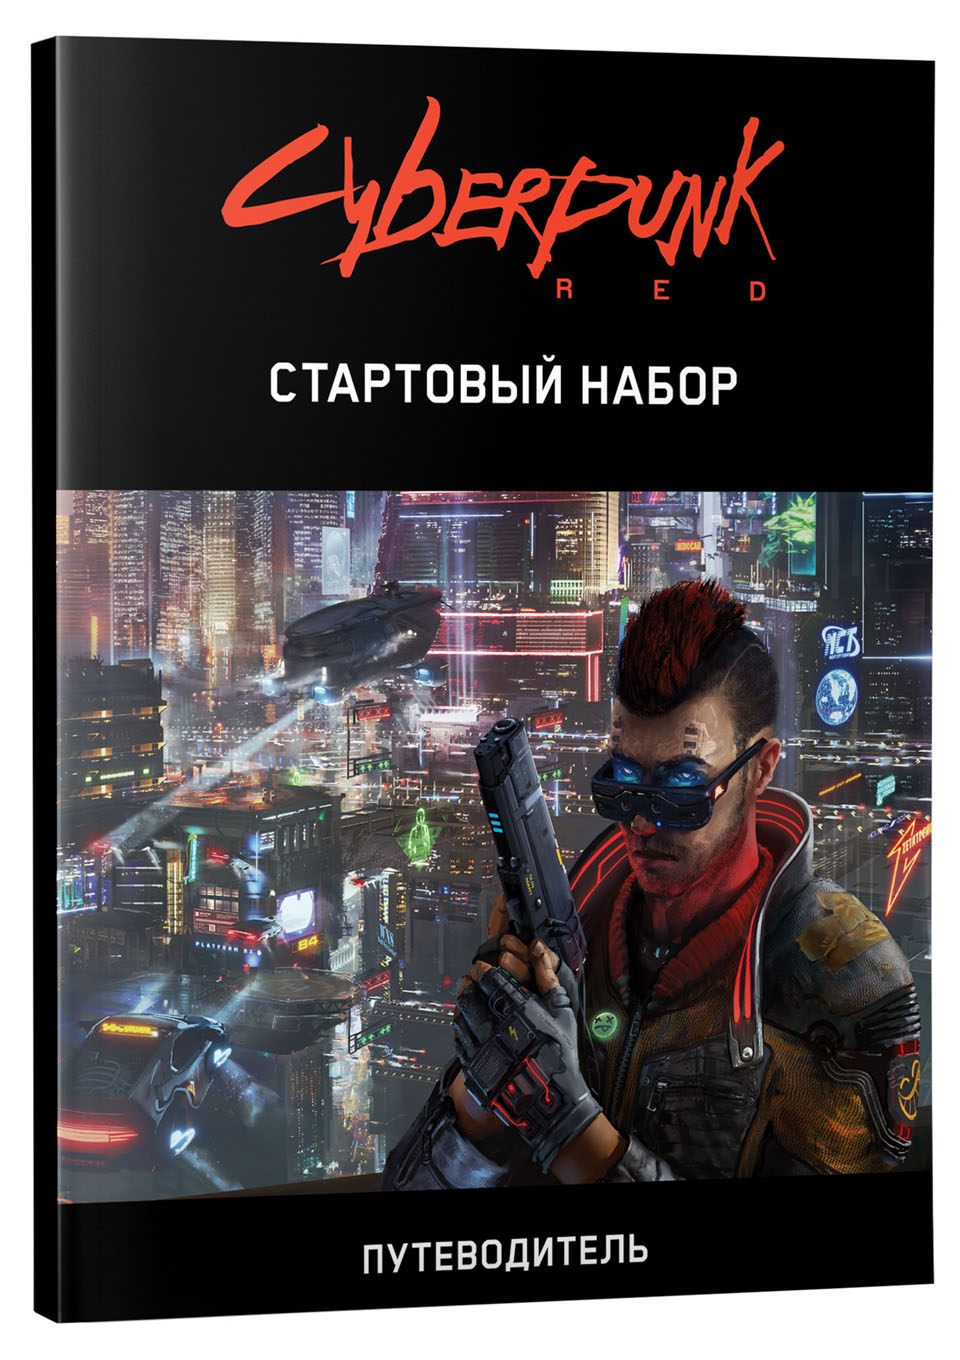 Cyberpunk red книга скачать фото 69